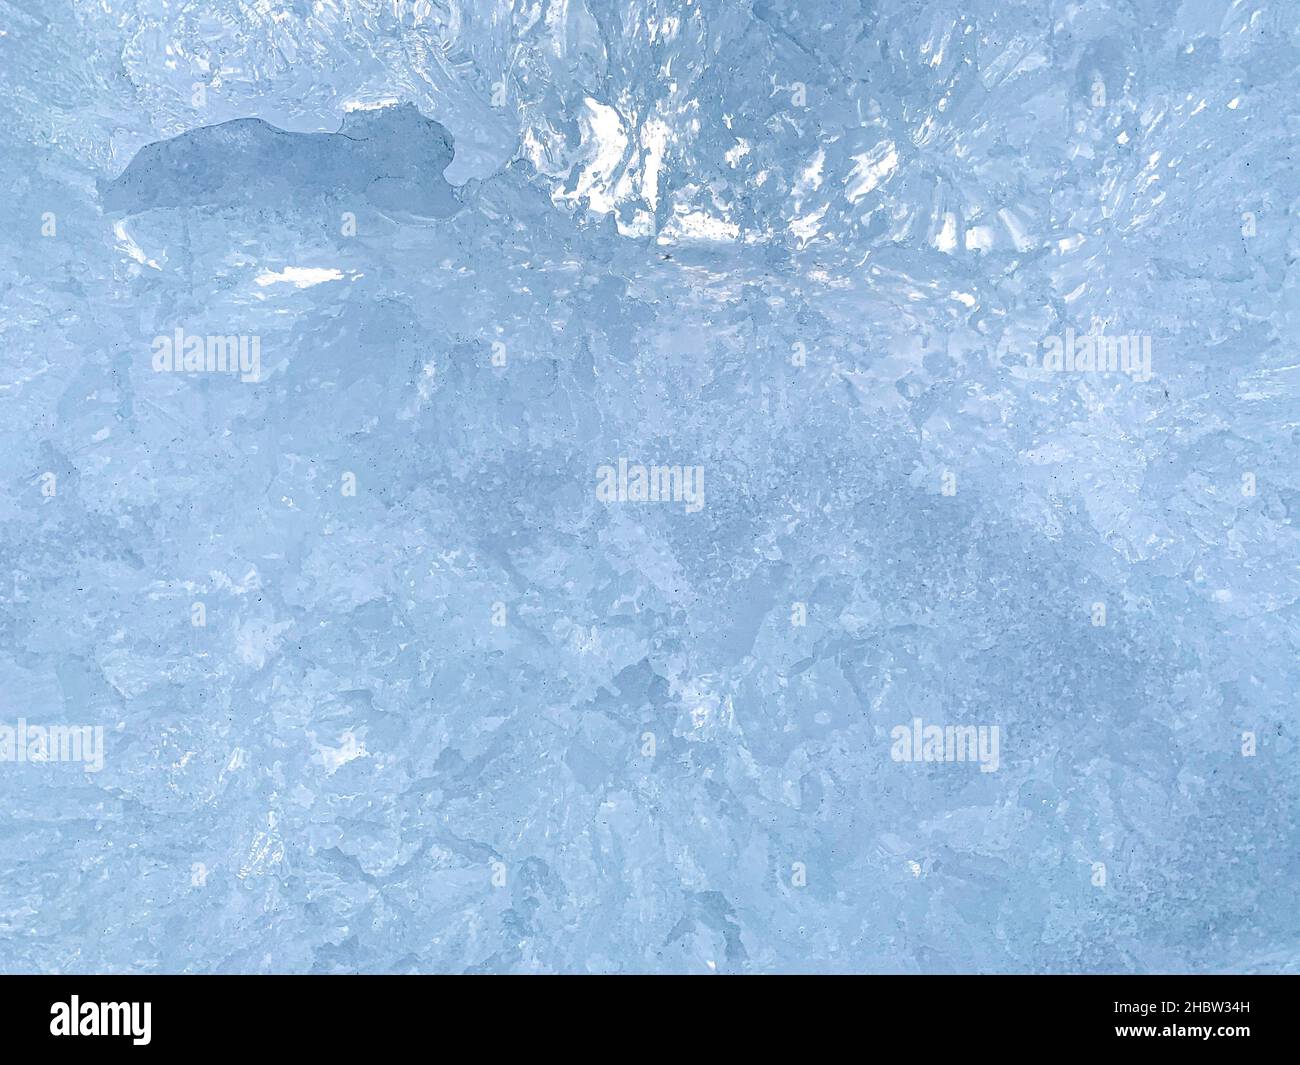 Un arrière-plan abstrait relativement uniforme avec des stries bleues et des cristaux de glace transparents dans un fragment à une seule tranche. Banque D'Images